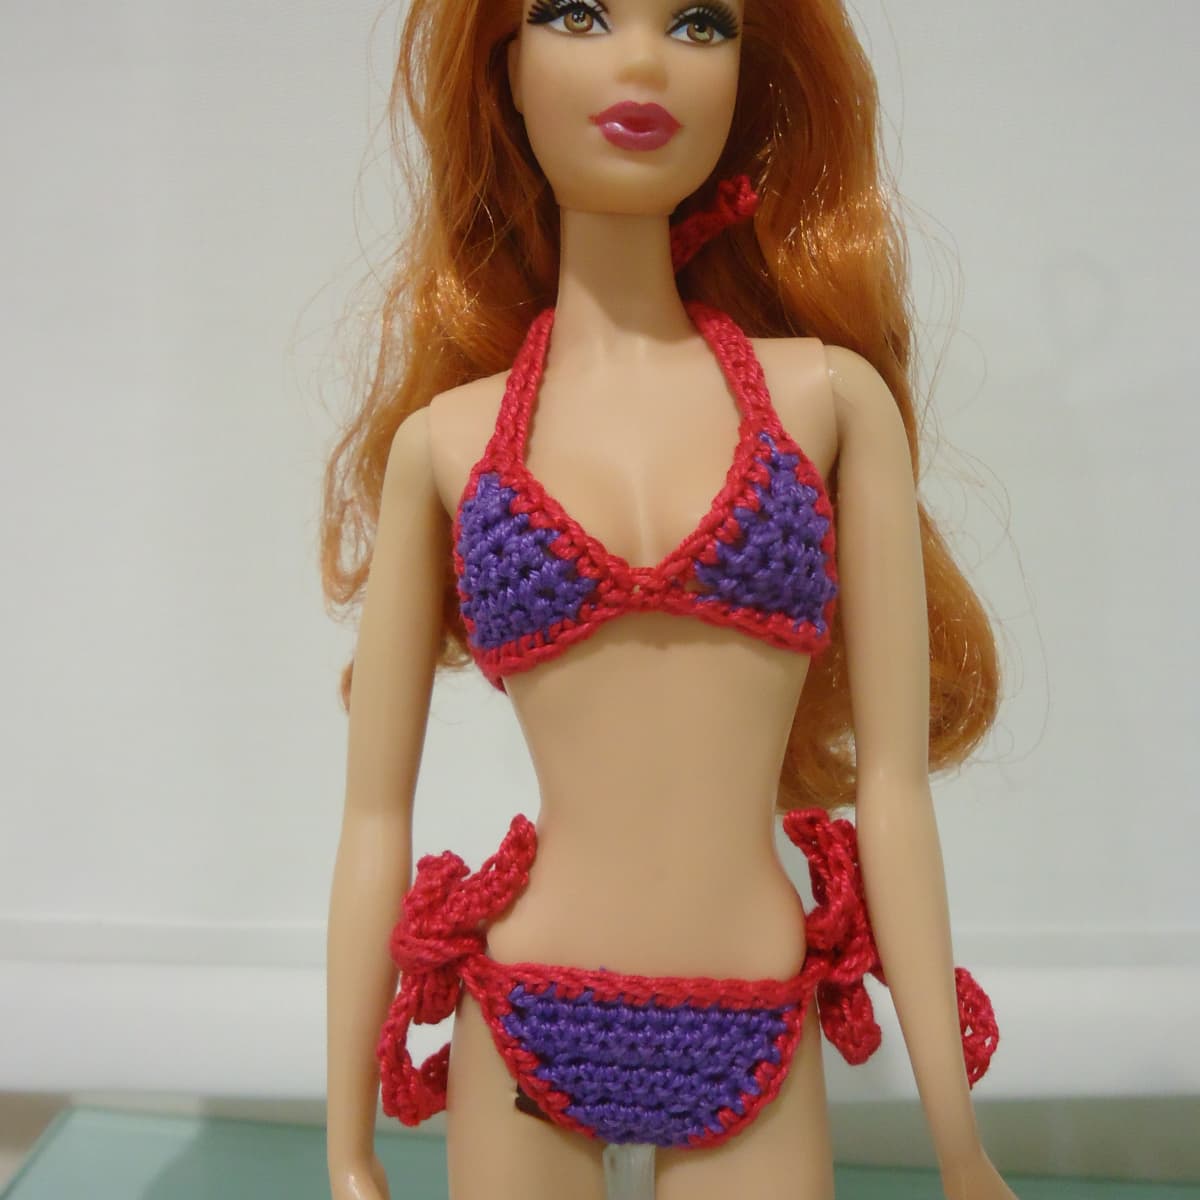 Barbie Bikini (Free Crochet Pattern) - FeltMagnet